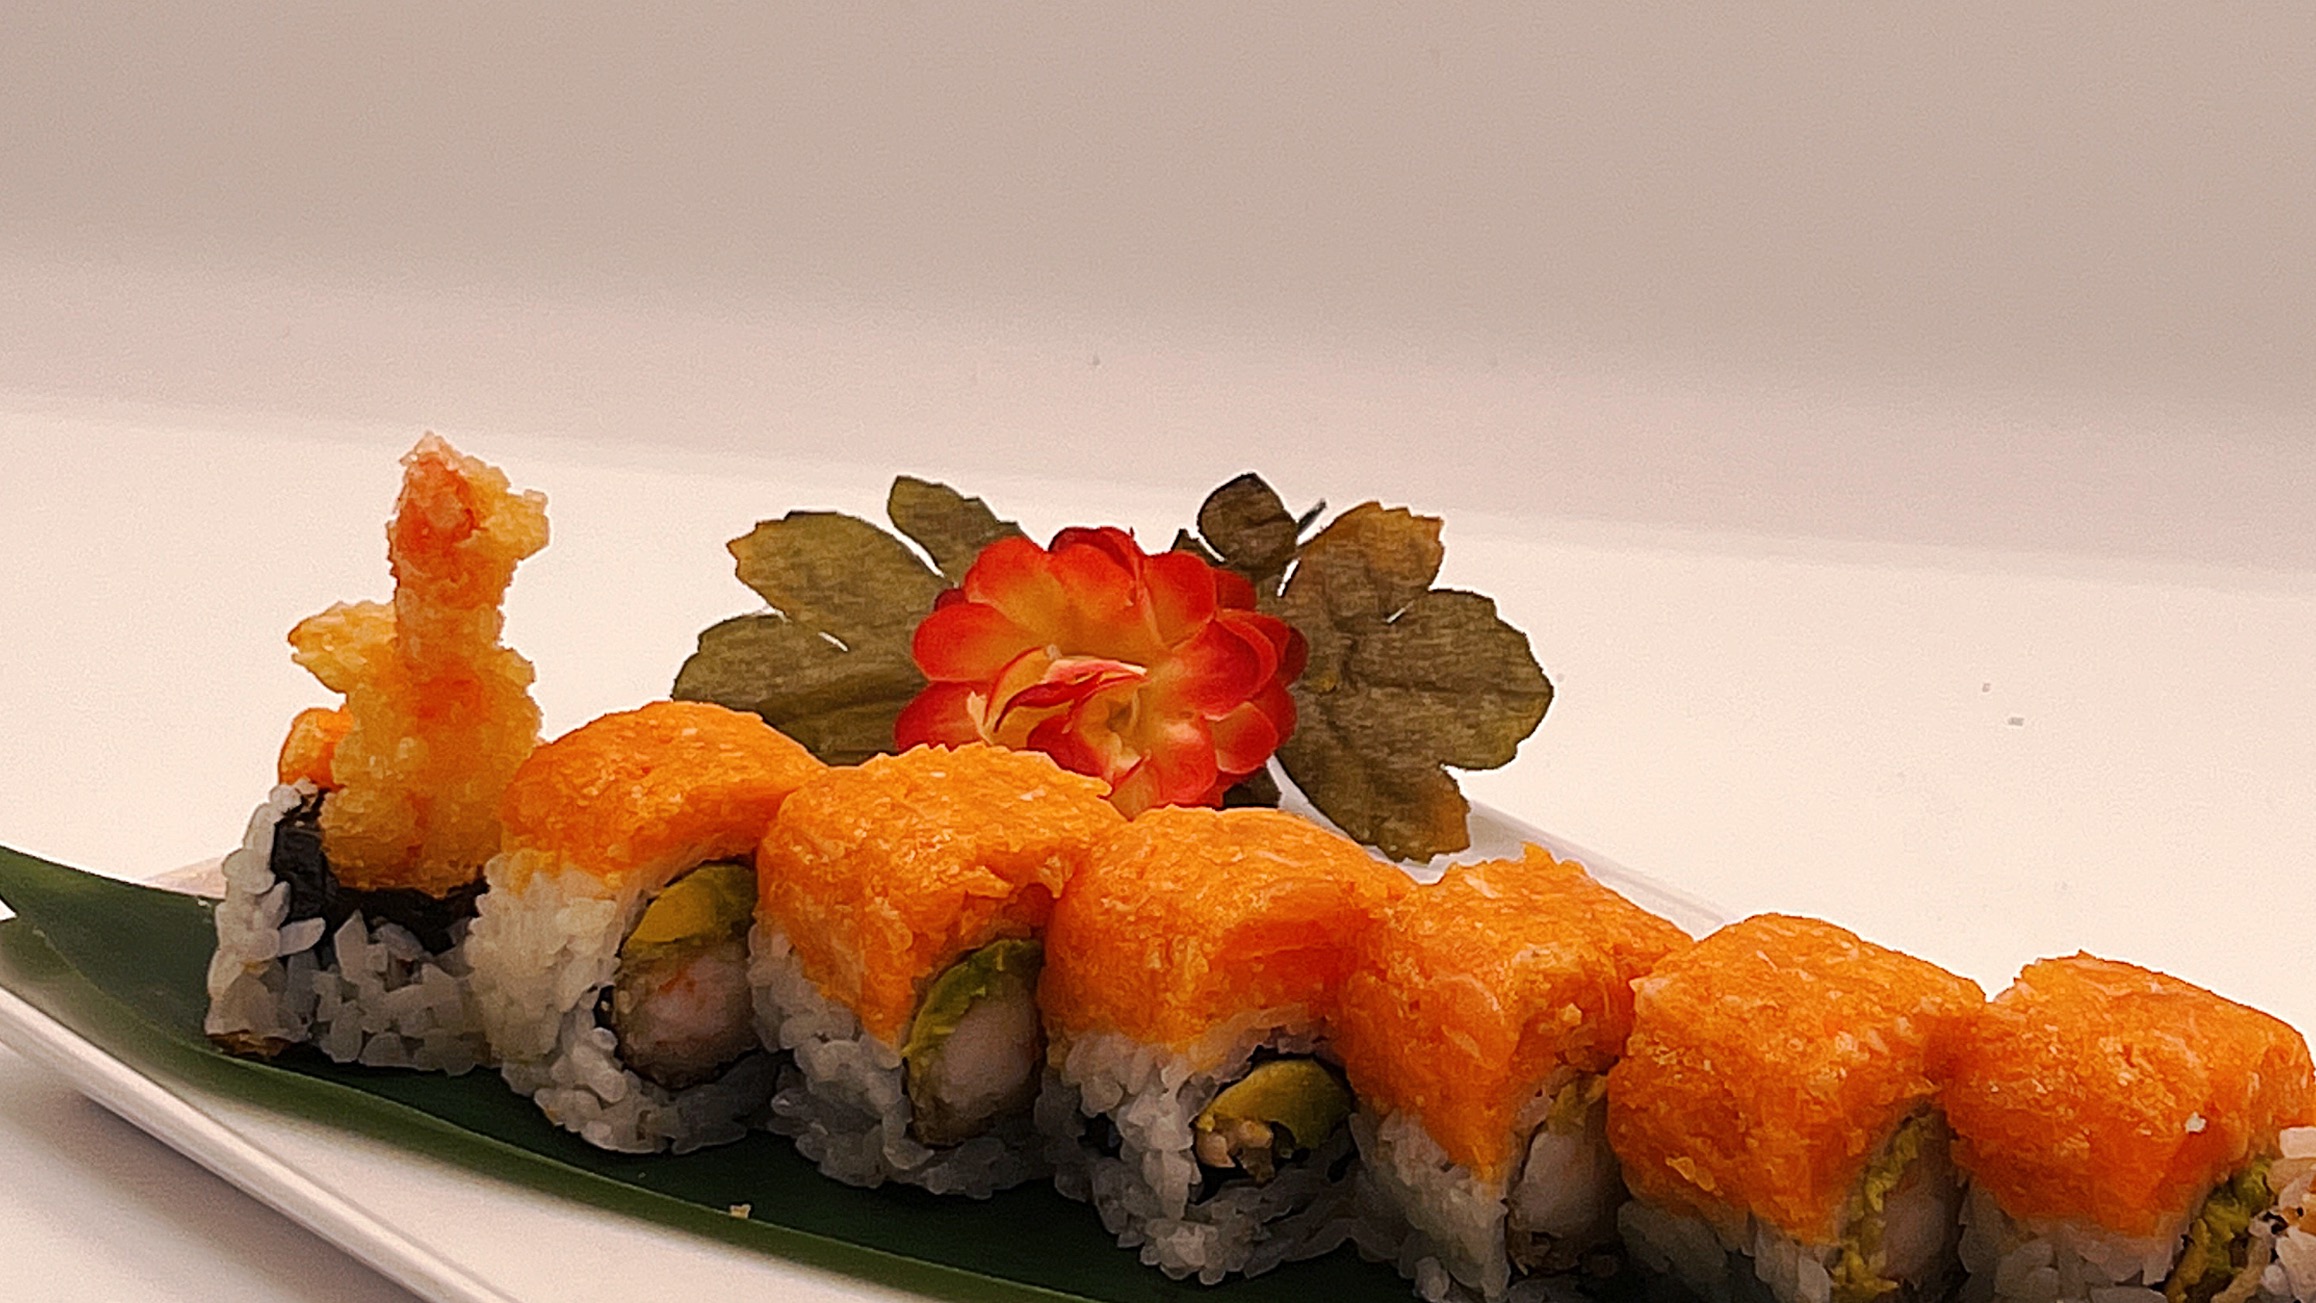 Miga Sushi's Menu: Prices and Deliver - Doordash